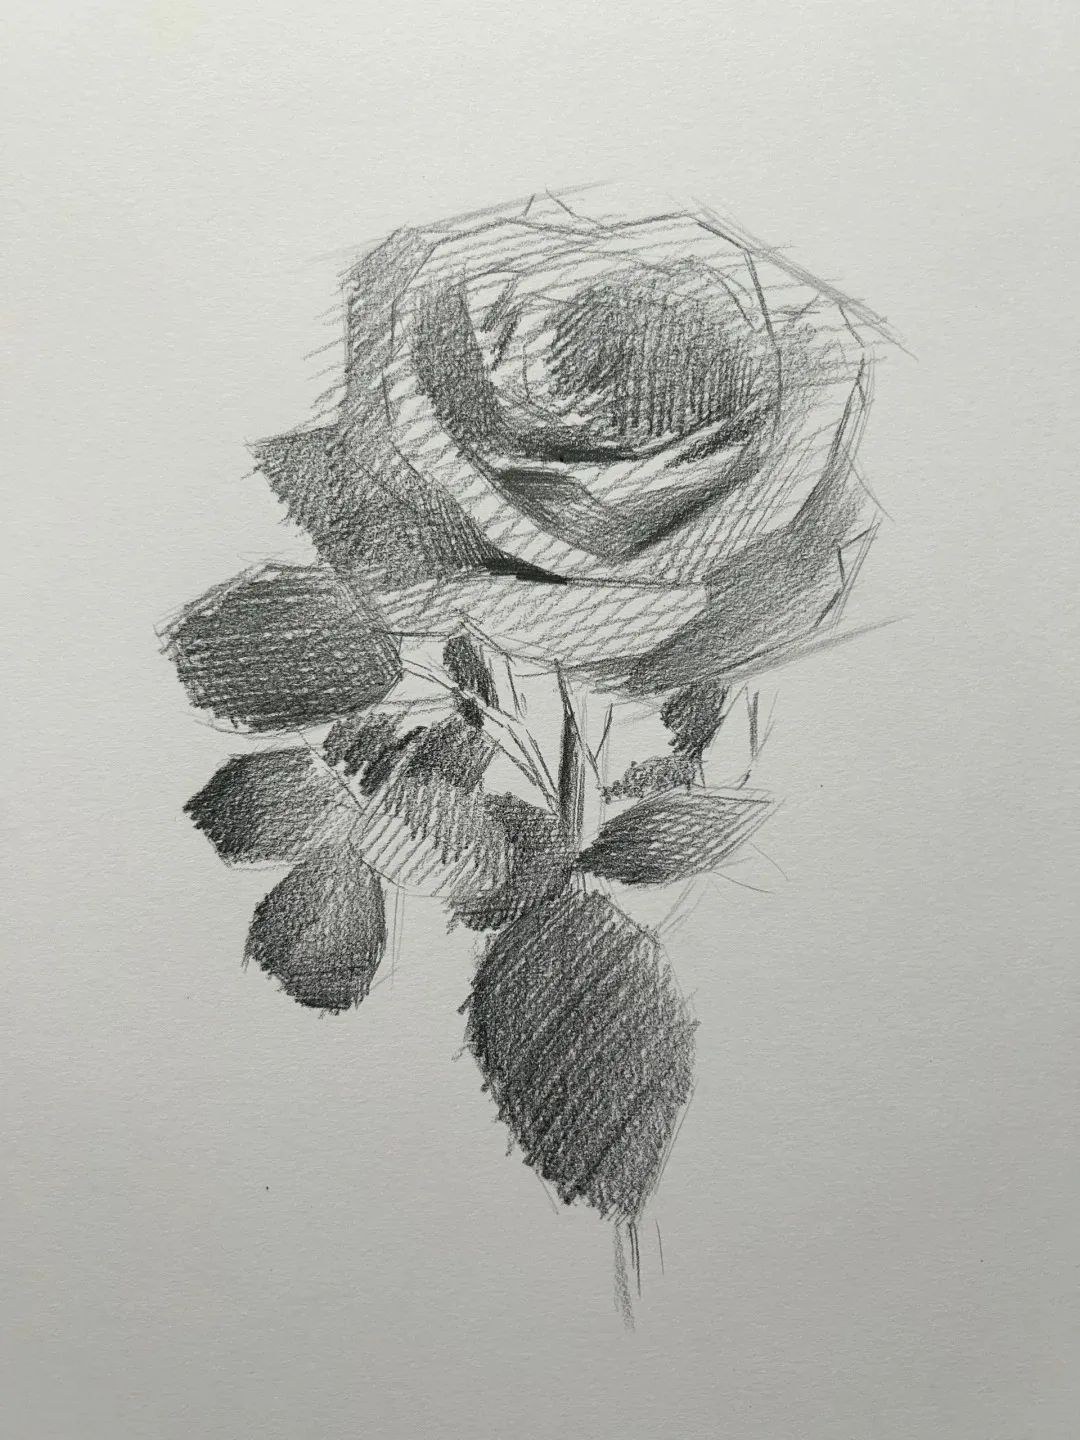 美术匠素描教程:跟随这份图文教程,绘制你的第一朵玫瑰